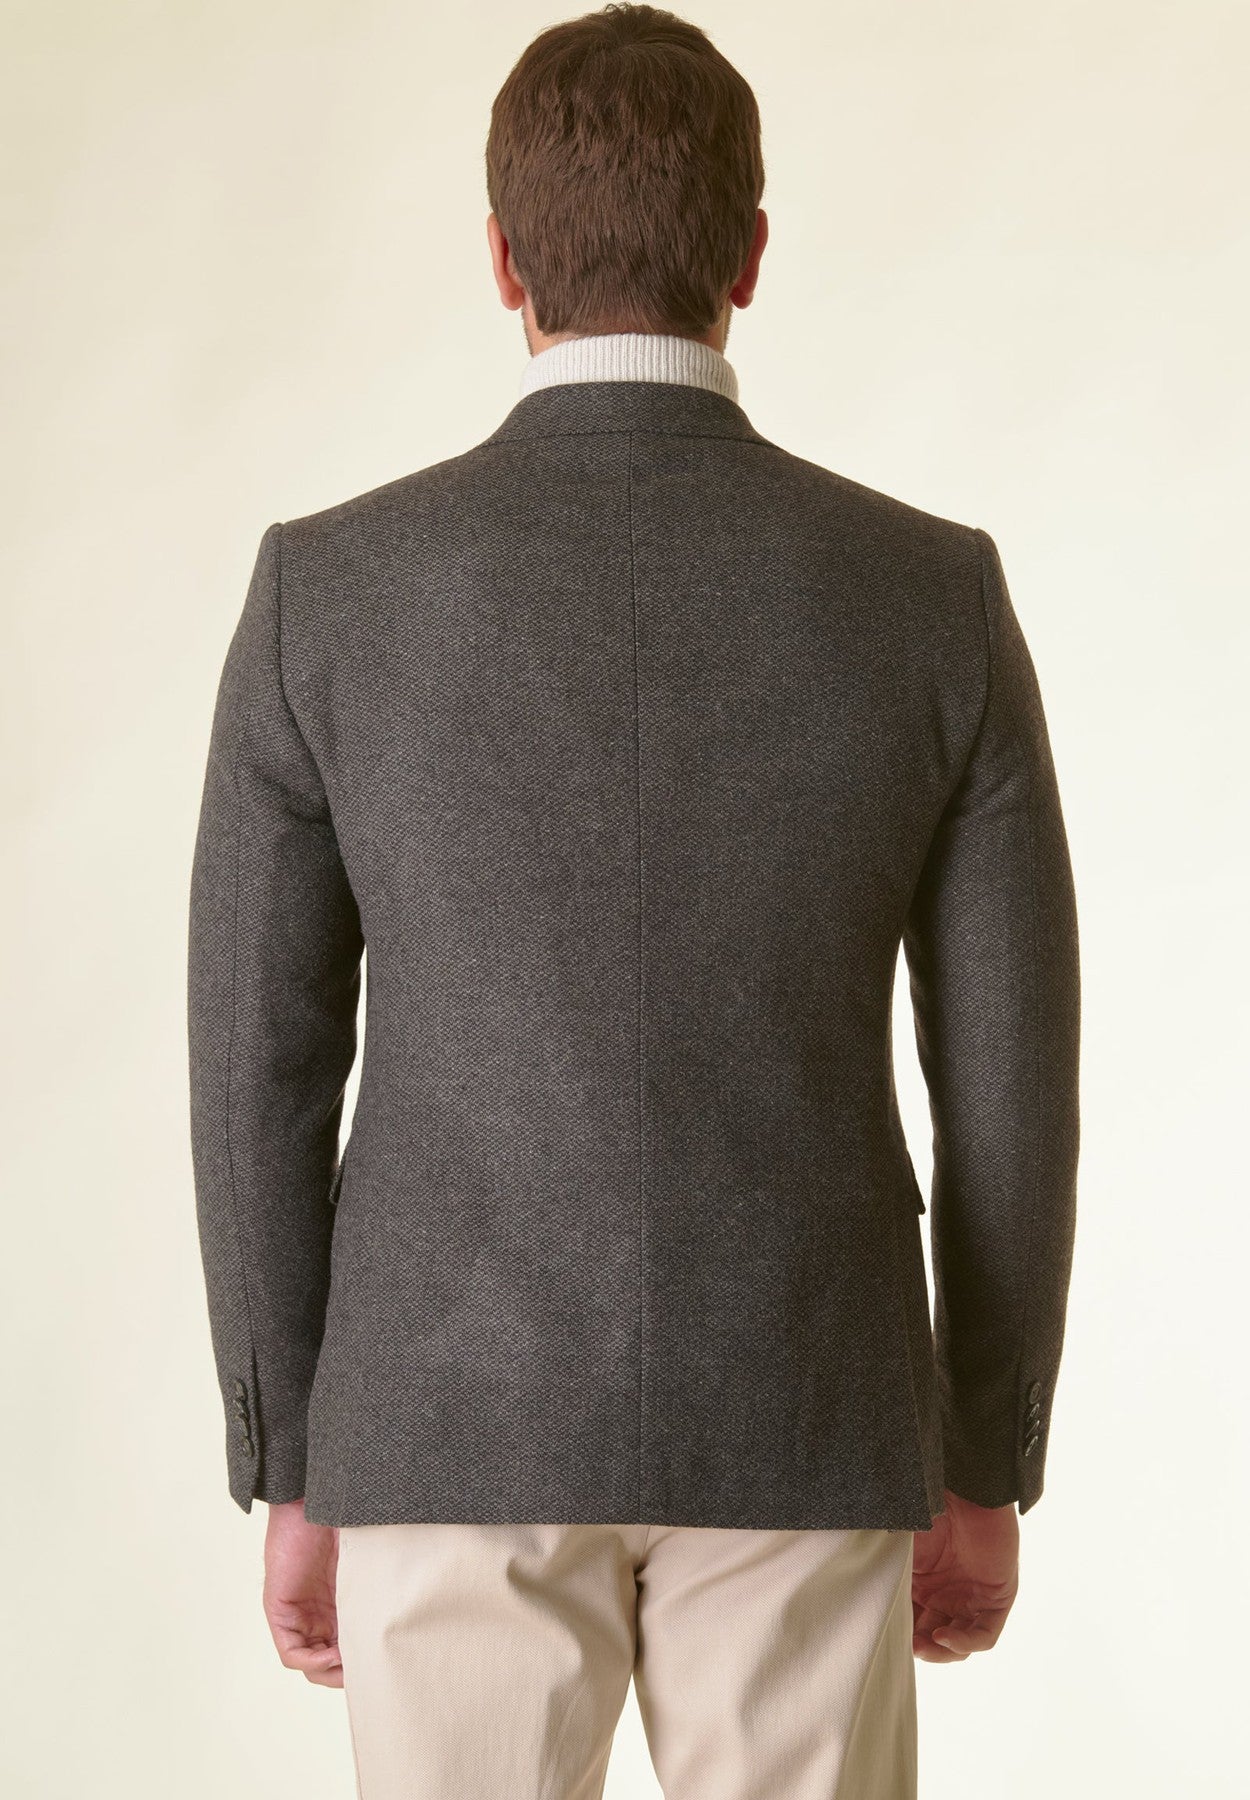 Brown lined textured tweed jacket custom